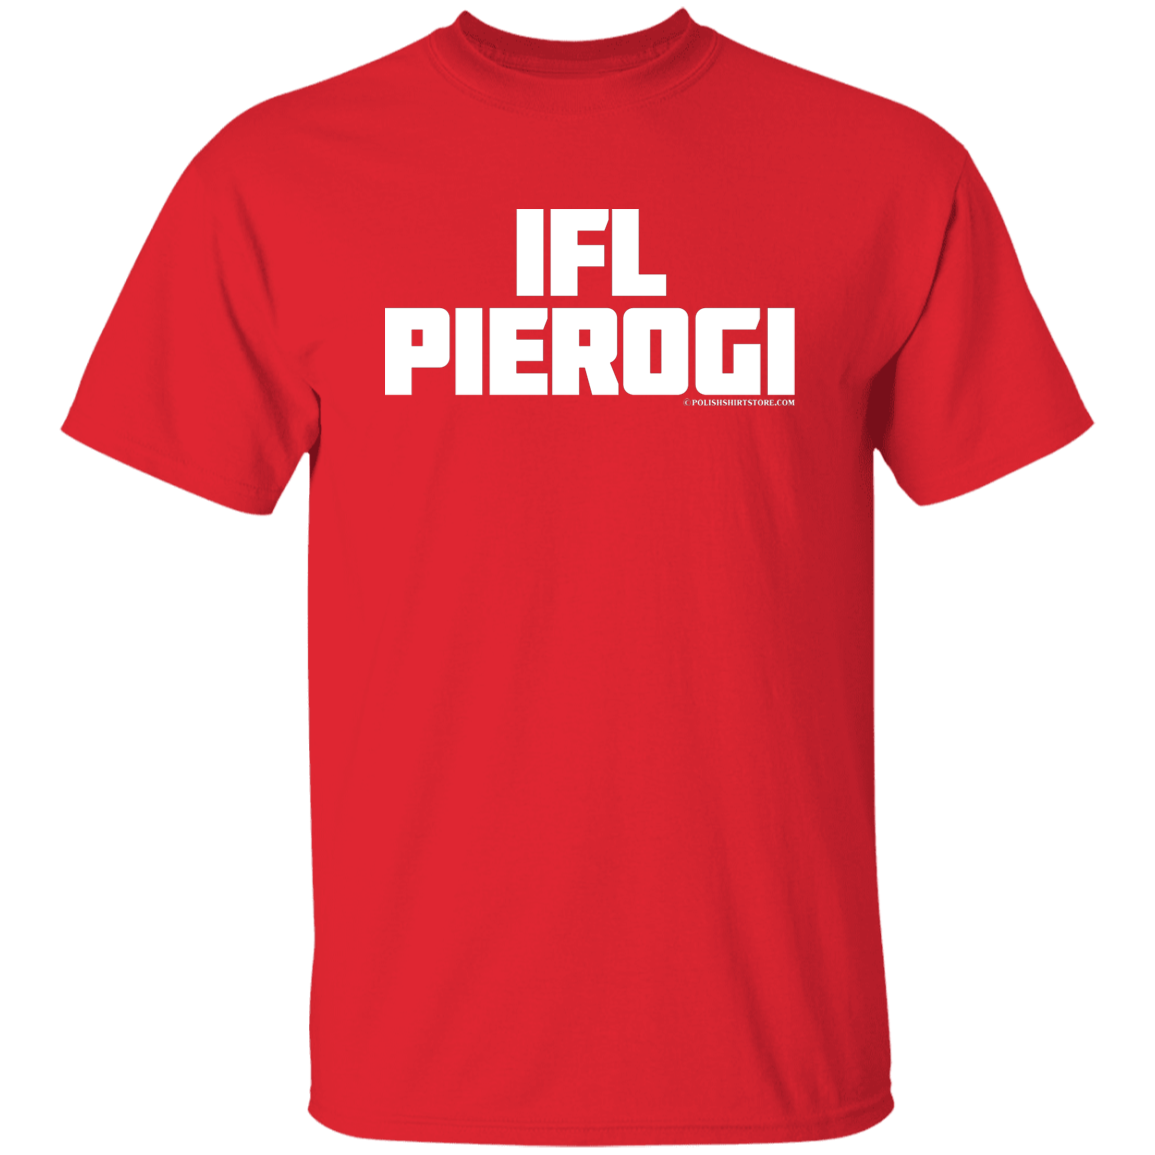 IFL Pierogi Apparel CustomCat G500 5.3 oz. T-Shirt Red S